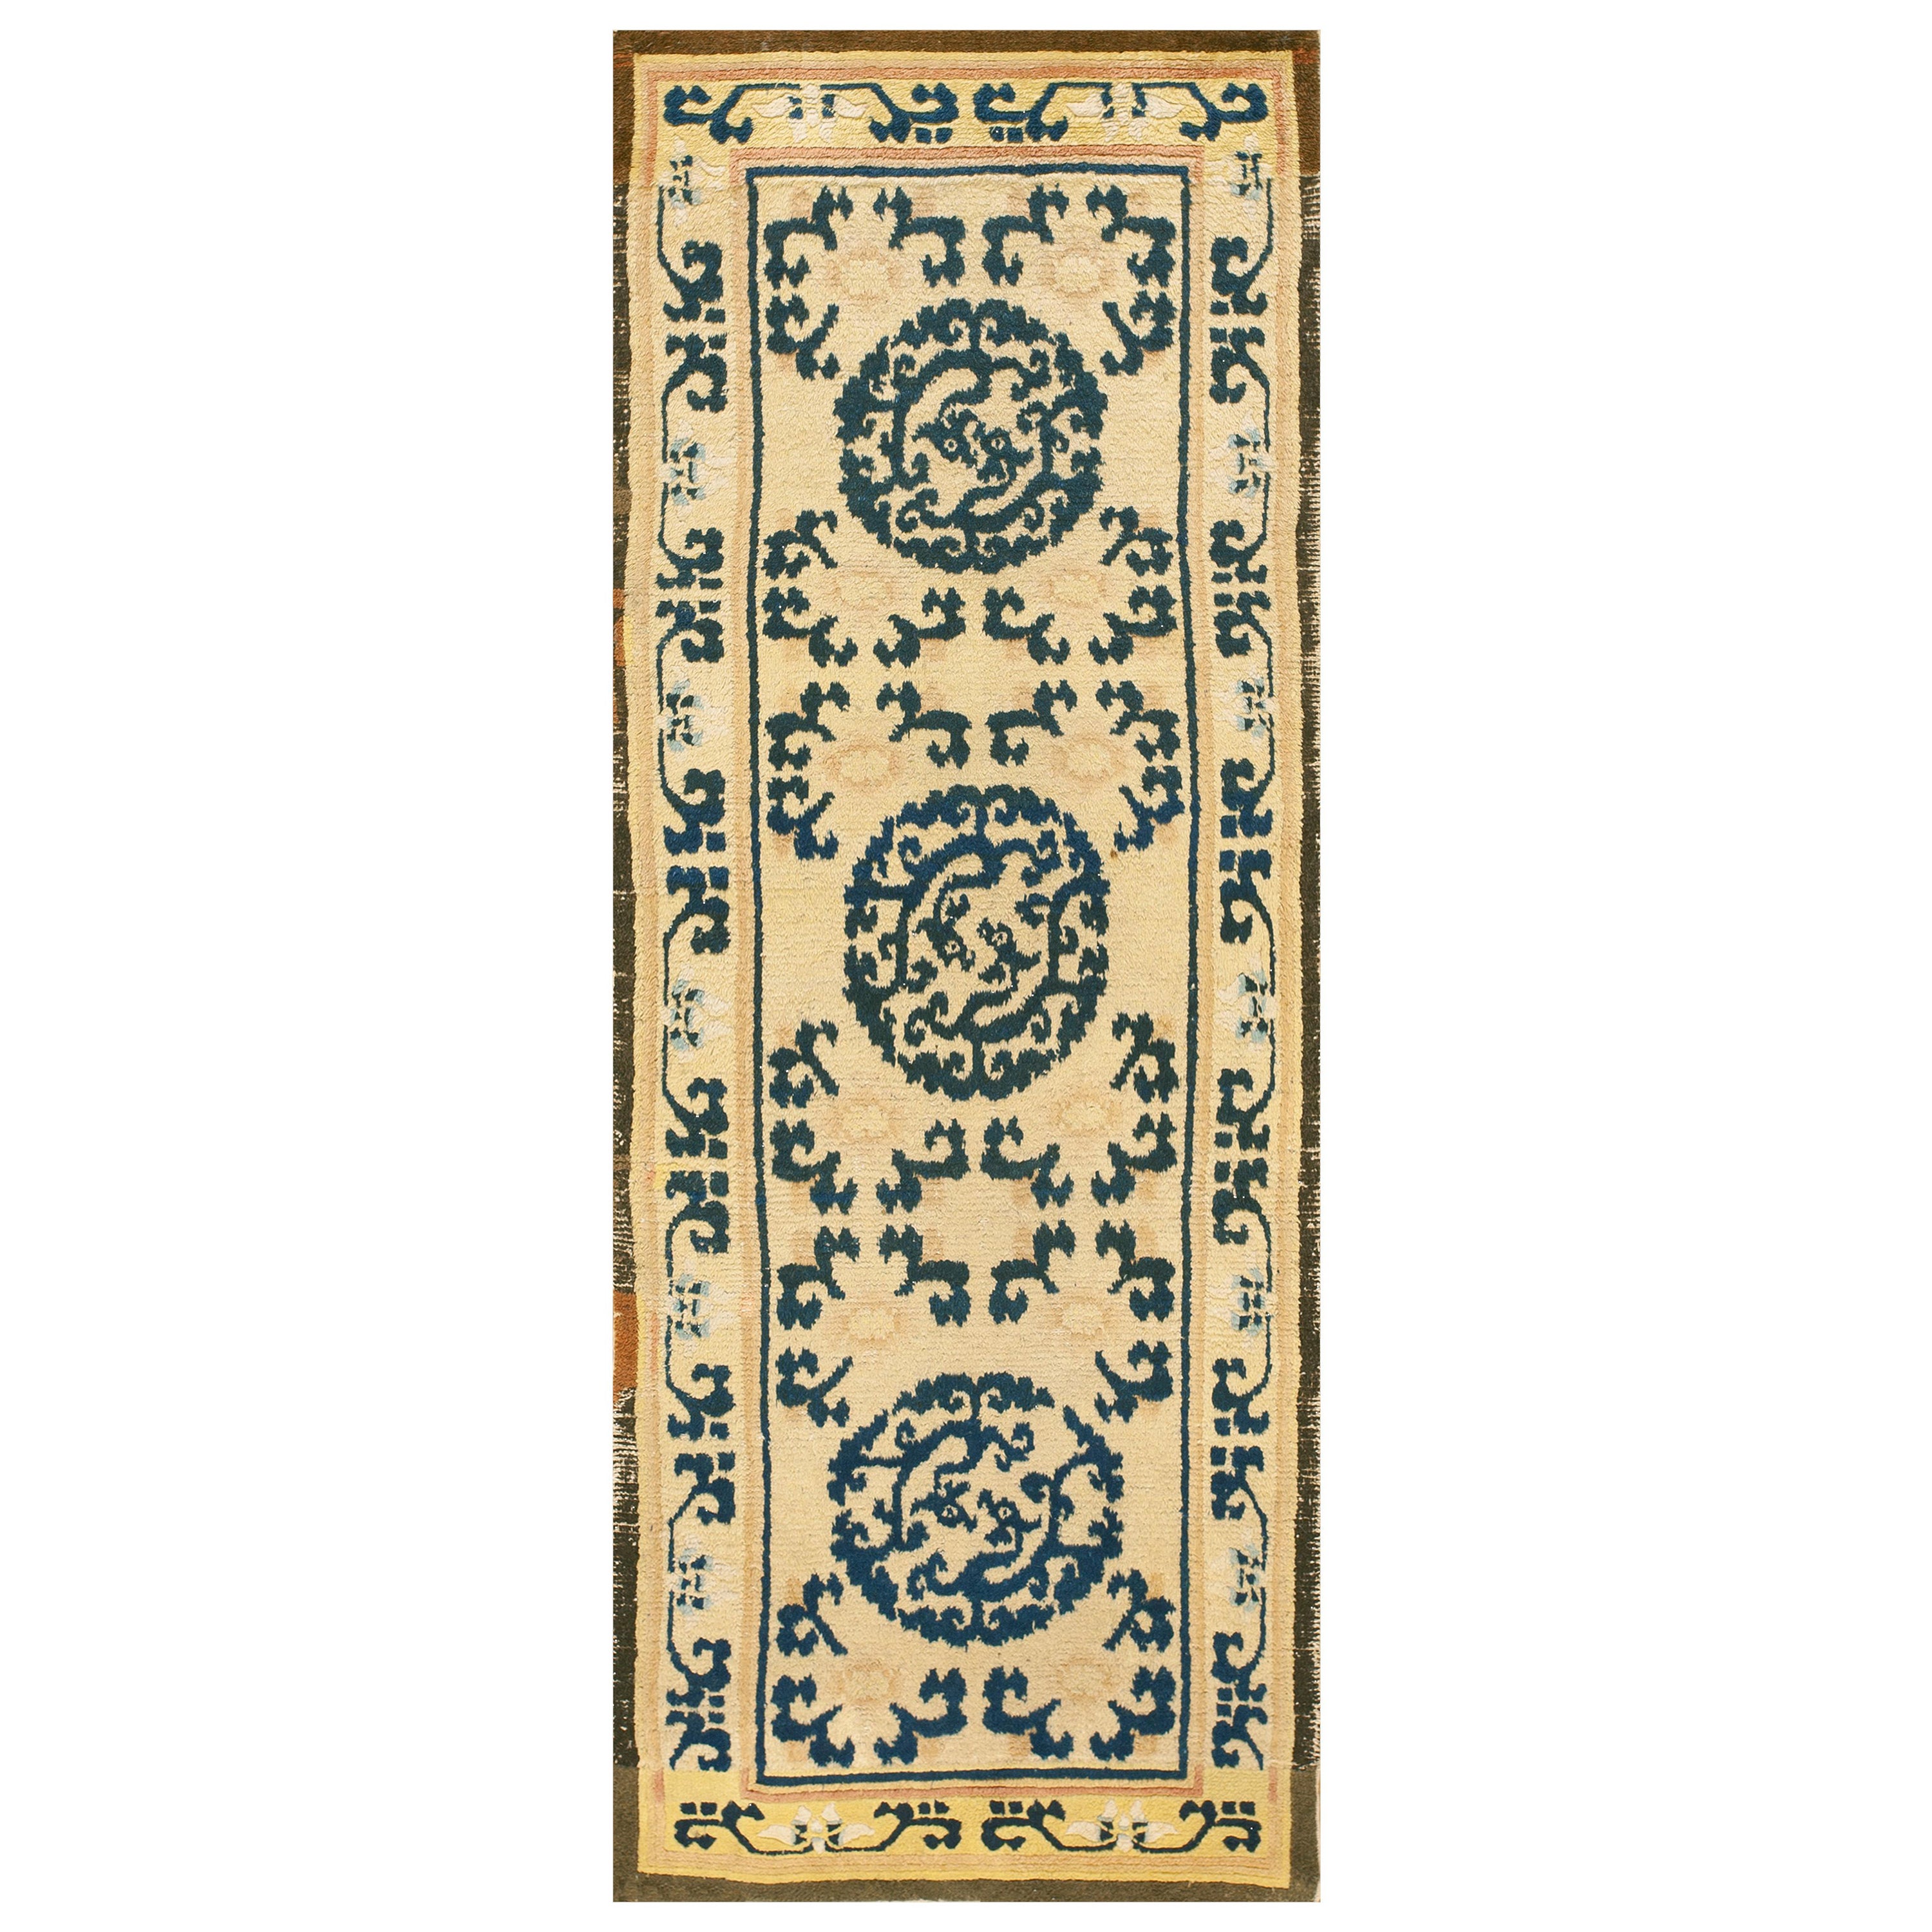 Chinesischer Ningxia-Teppich aus dem 18. Jahrhundert ( 2'9" x 7' - 85 x 215 cm)